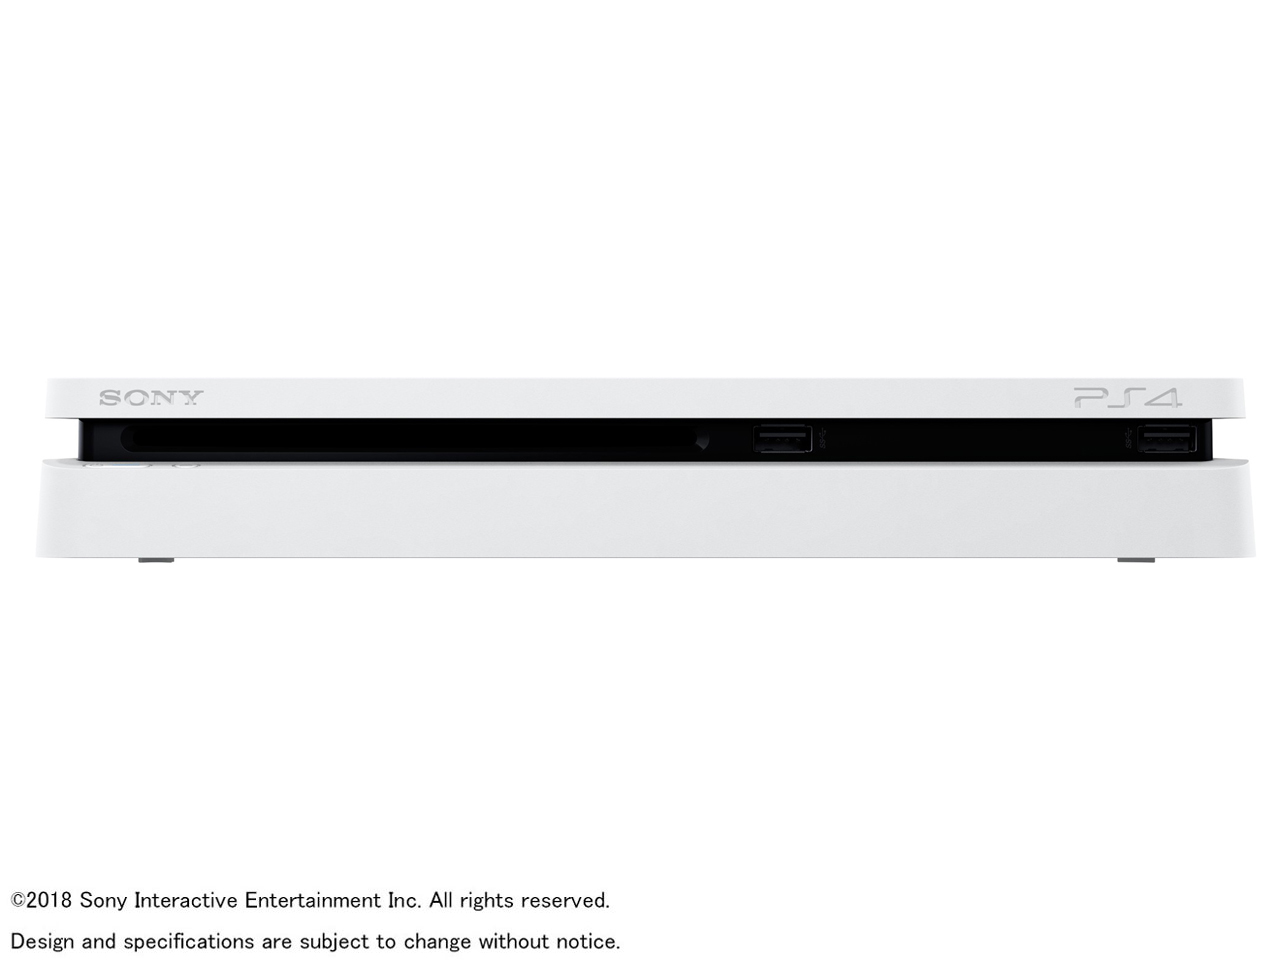 価格.com - 『本体 横置き 正面』 プレイステーション4 CUH-2200AB02 [500GB グレイシャー・ホワイト] の製品画像